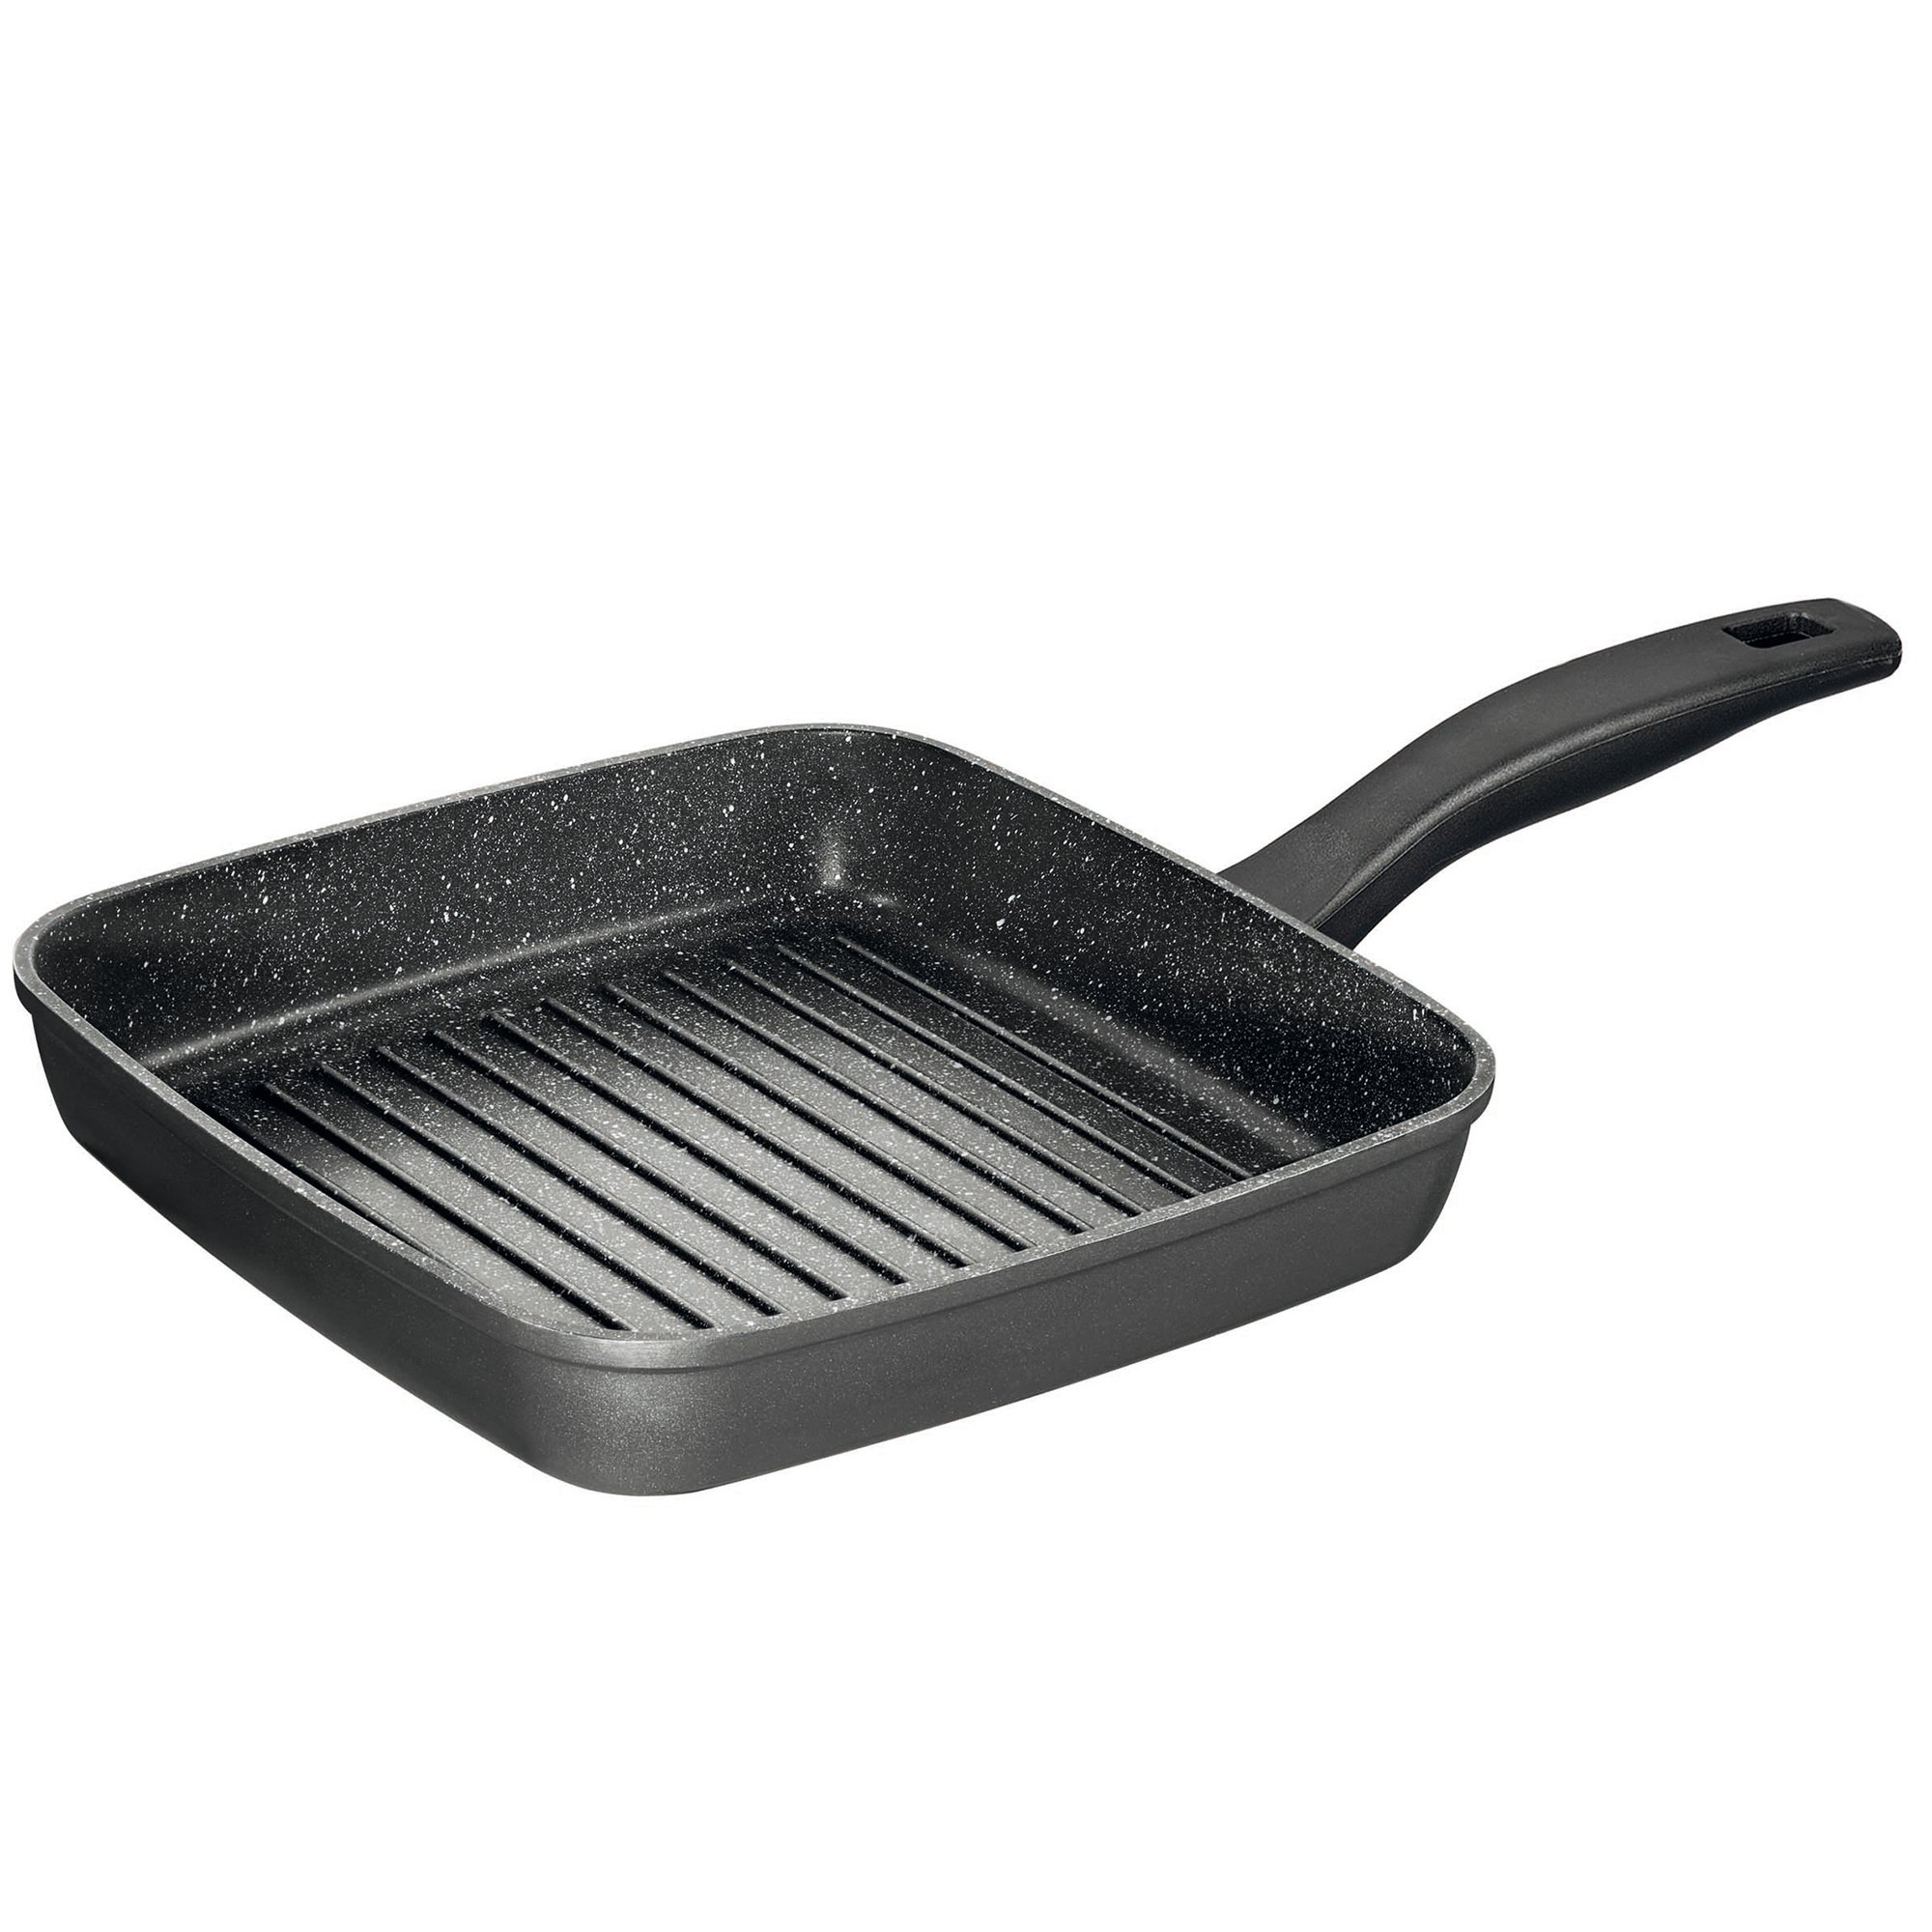 STONELINE® BBQ Griddle Pan 26 cm, Non-Stick Pan | CLASSIC